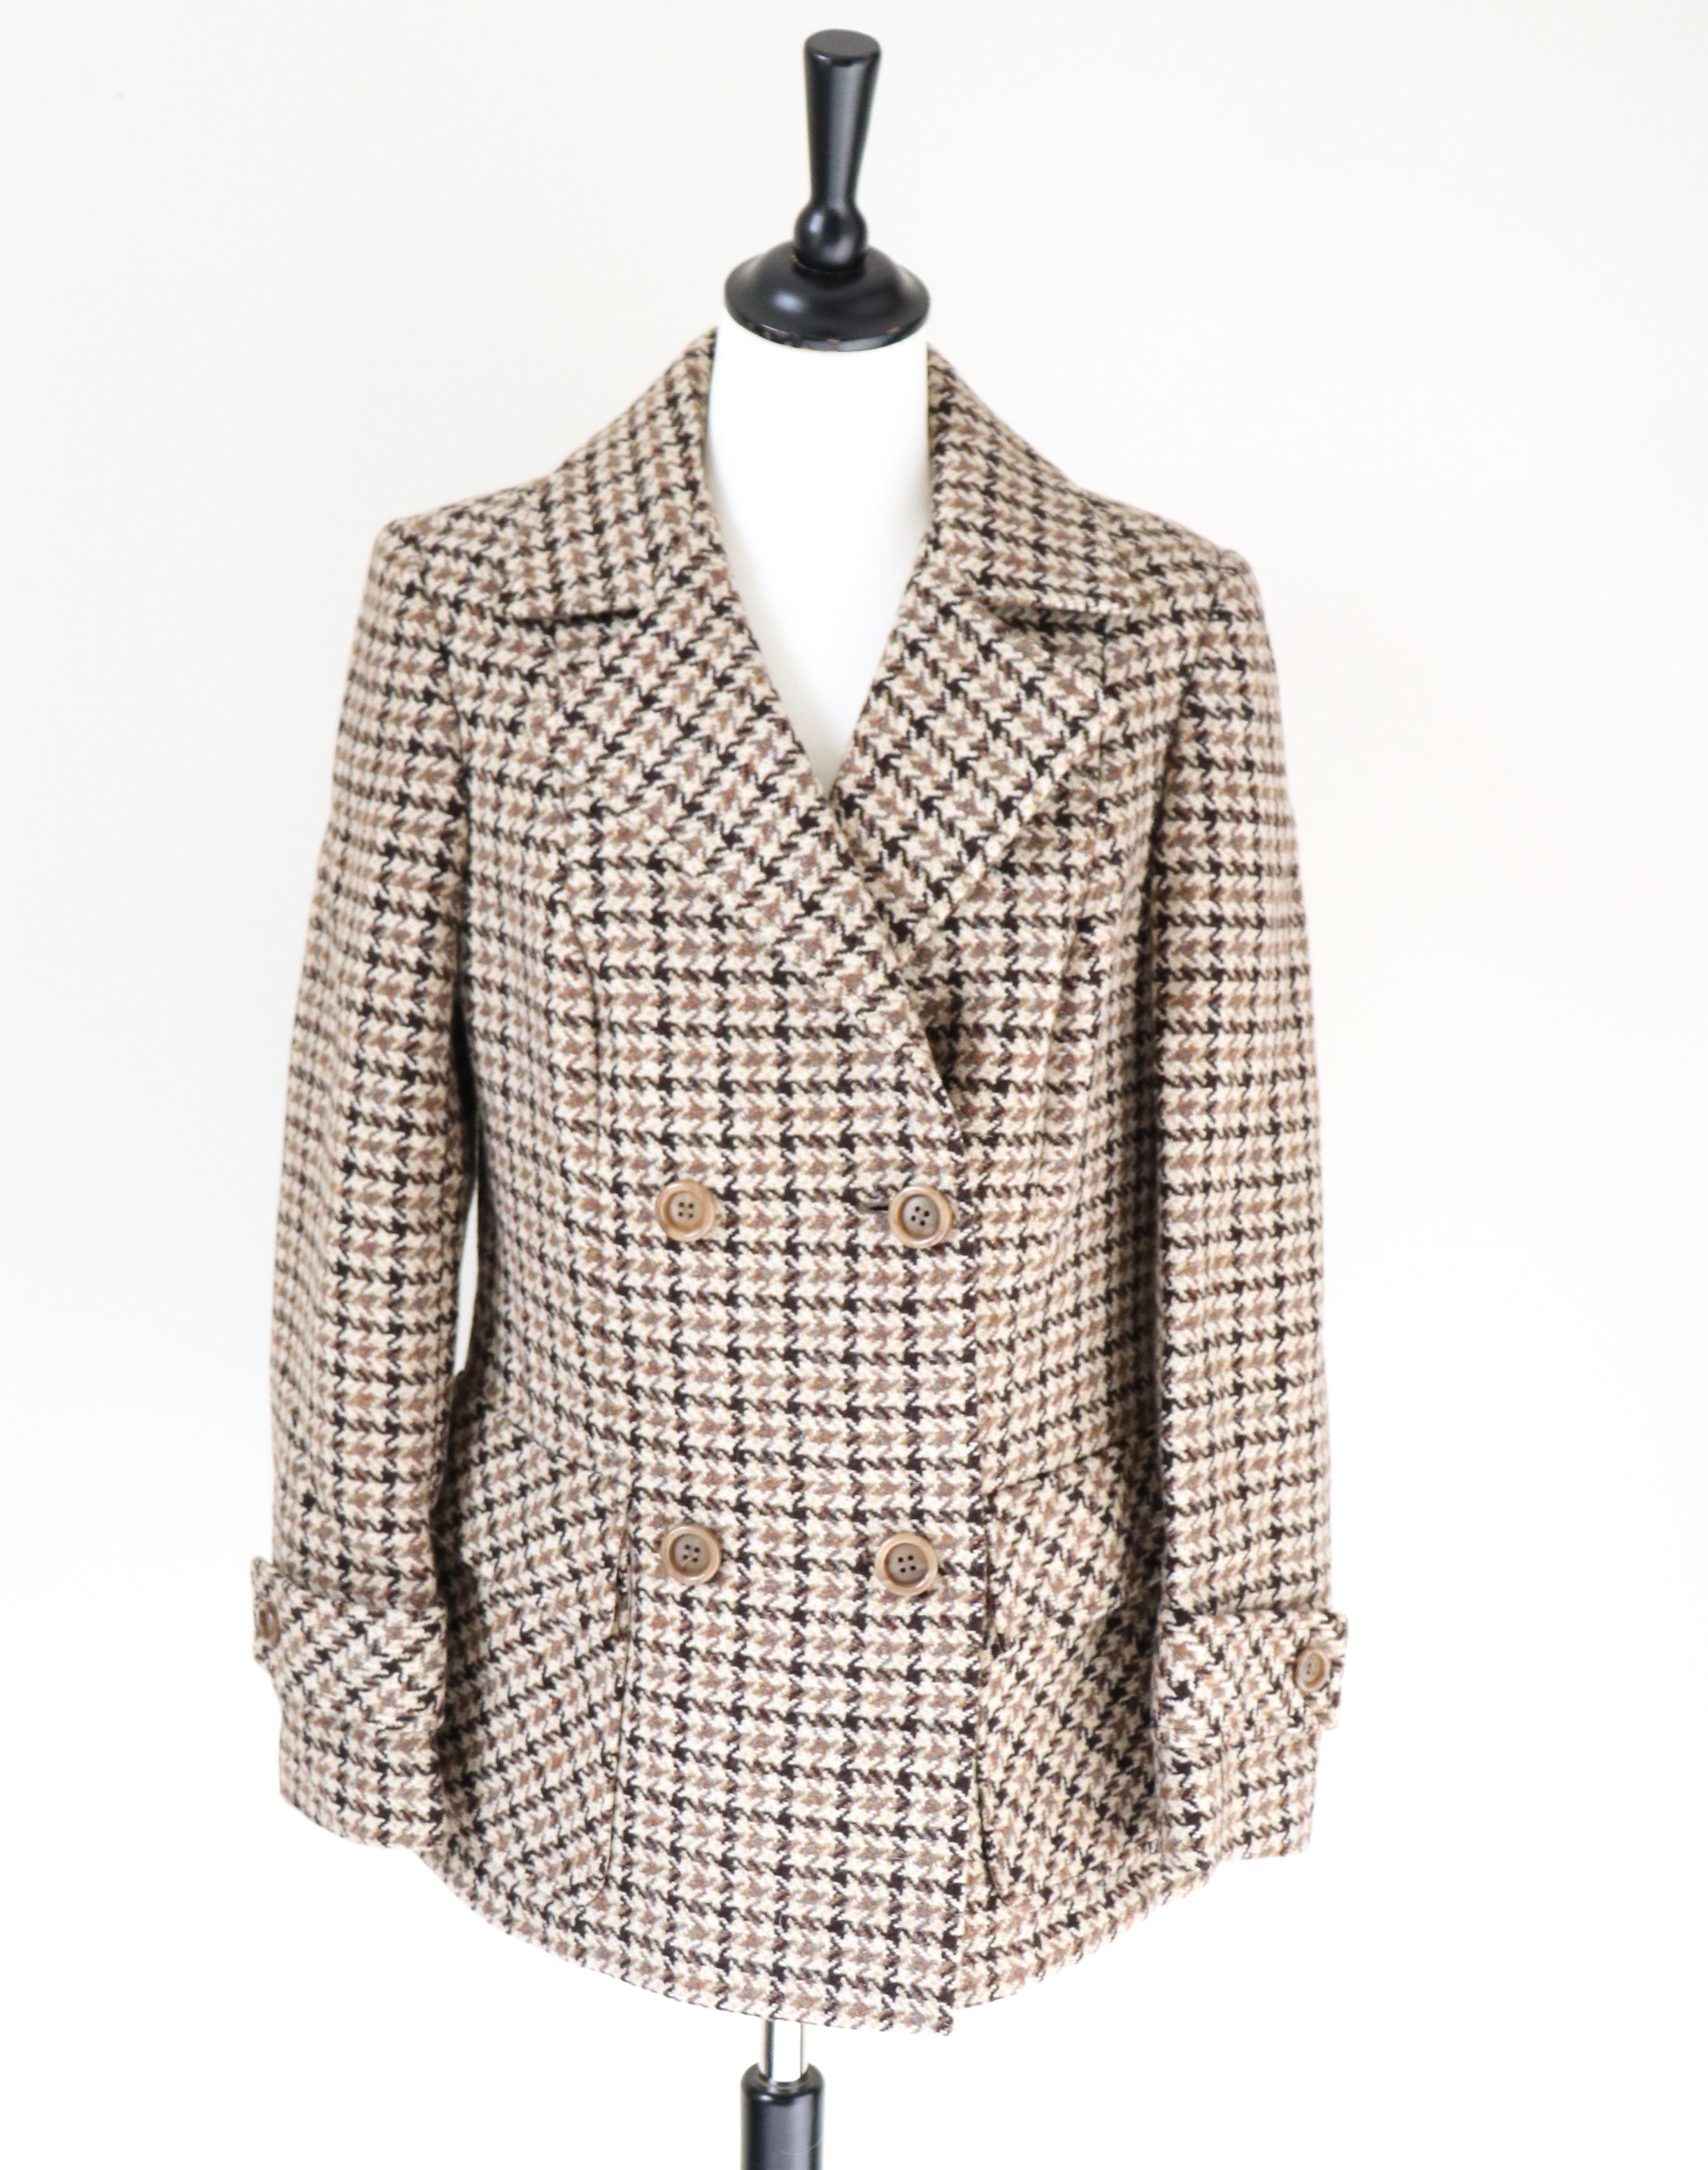 Heavy Pea Coat  Jacket - Brown / Beige Check - Wool - Vintage - M / UK 12